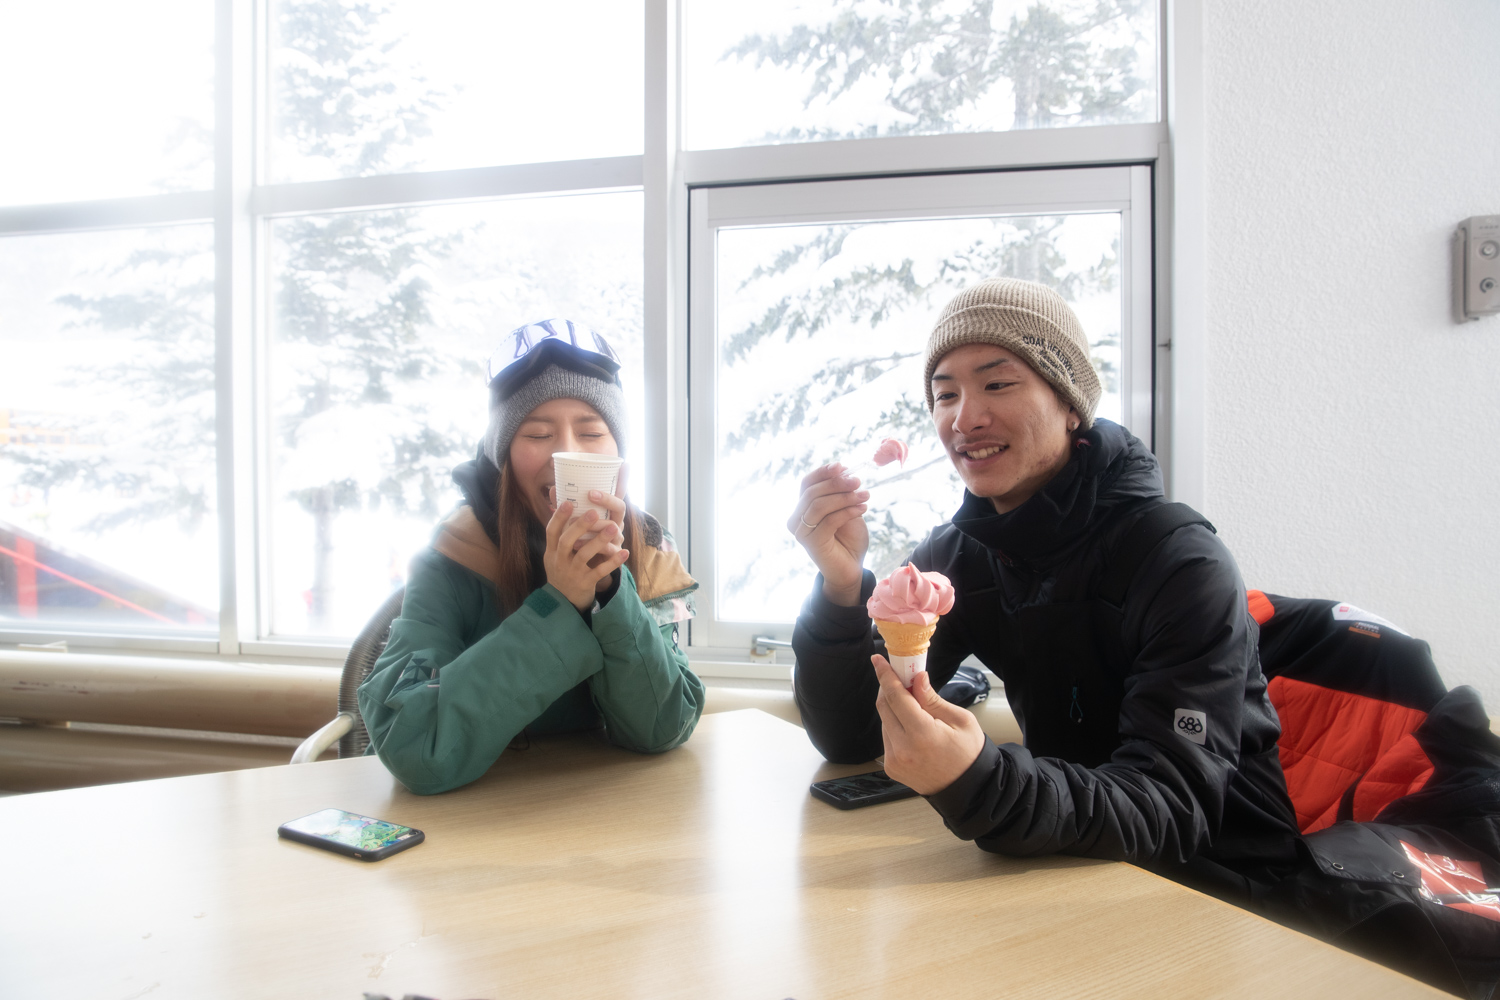 센터 하우스에서 조금 휴식.짙은 딸기 소프트 아이스크림을 즐기는 소라와 어른인 카나는 커피로 쇼트 브레이크.